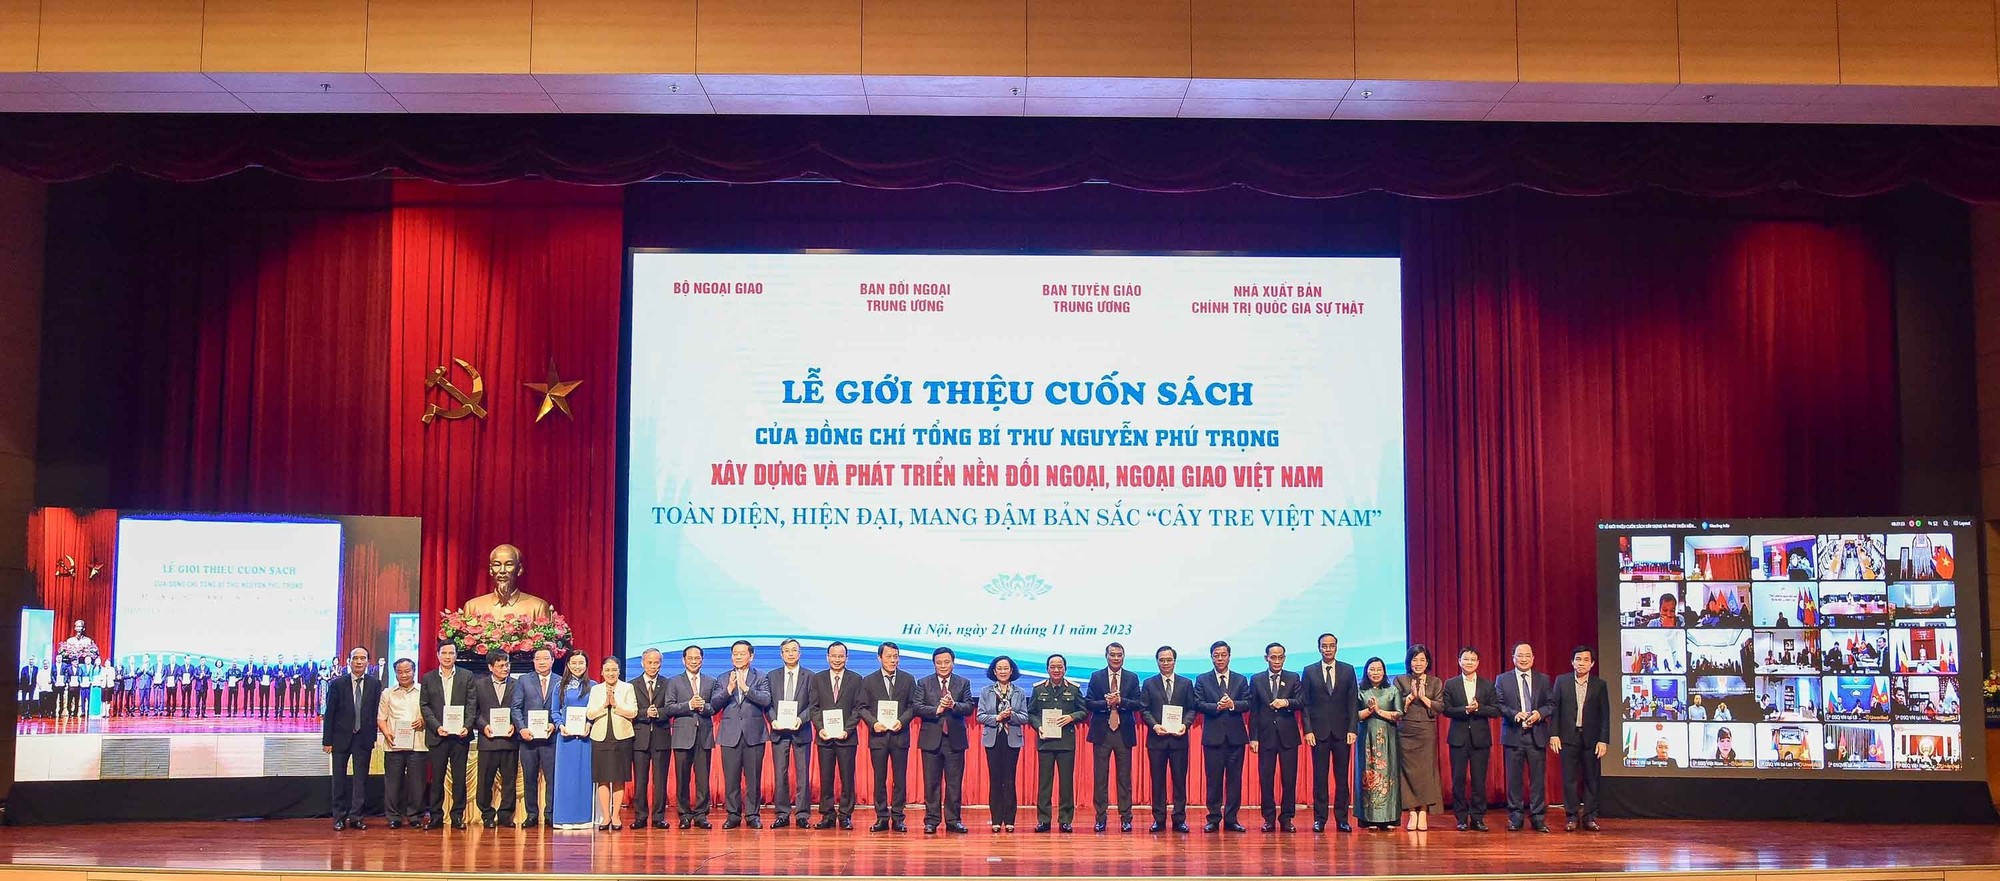 Ra mắt cuốn sách của Tổng Bí thư Nguyễn Phú Trọng về xây dựng nền đối ngoại, ngoại giao Việt Nam - Ảnh 5.